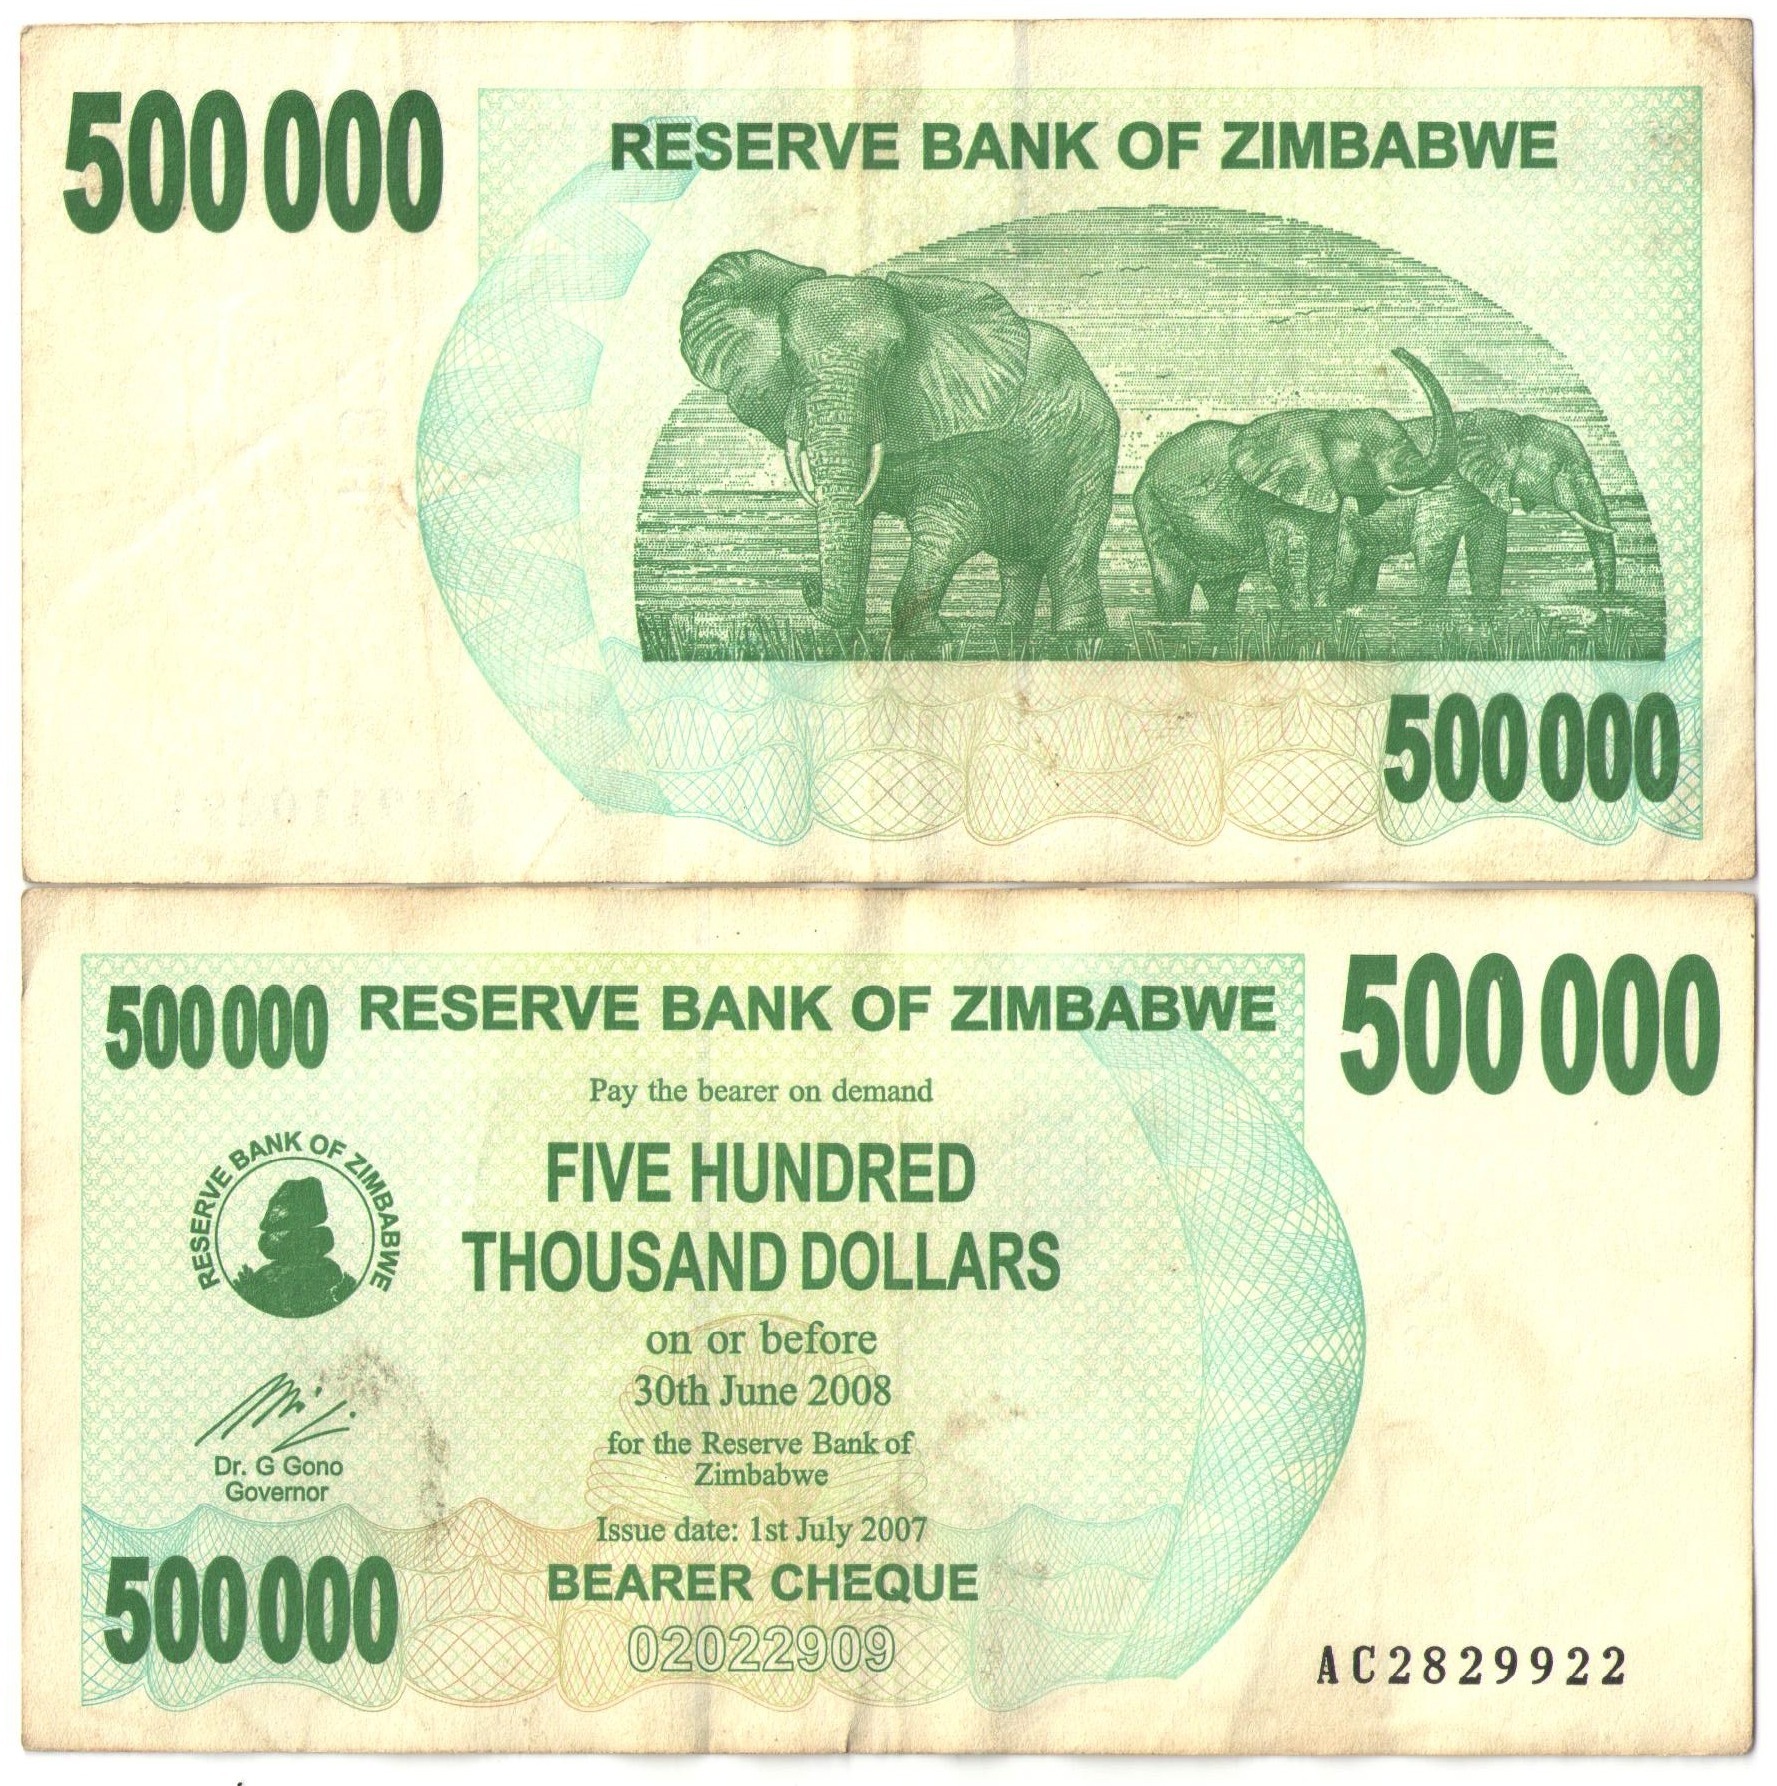 2007 доллар в рублях. Зимбабвийский доллар. 500000 Долларов фото. 500000 Долларов Зимбабве в рублях. Доллар Зимбабве.